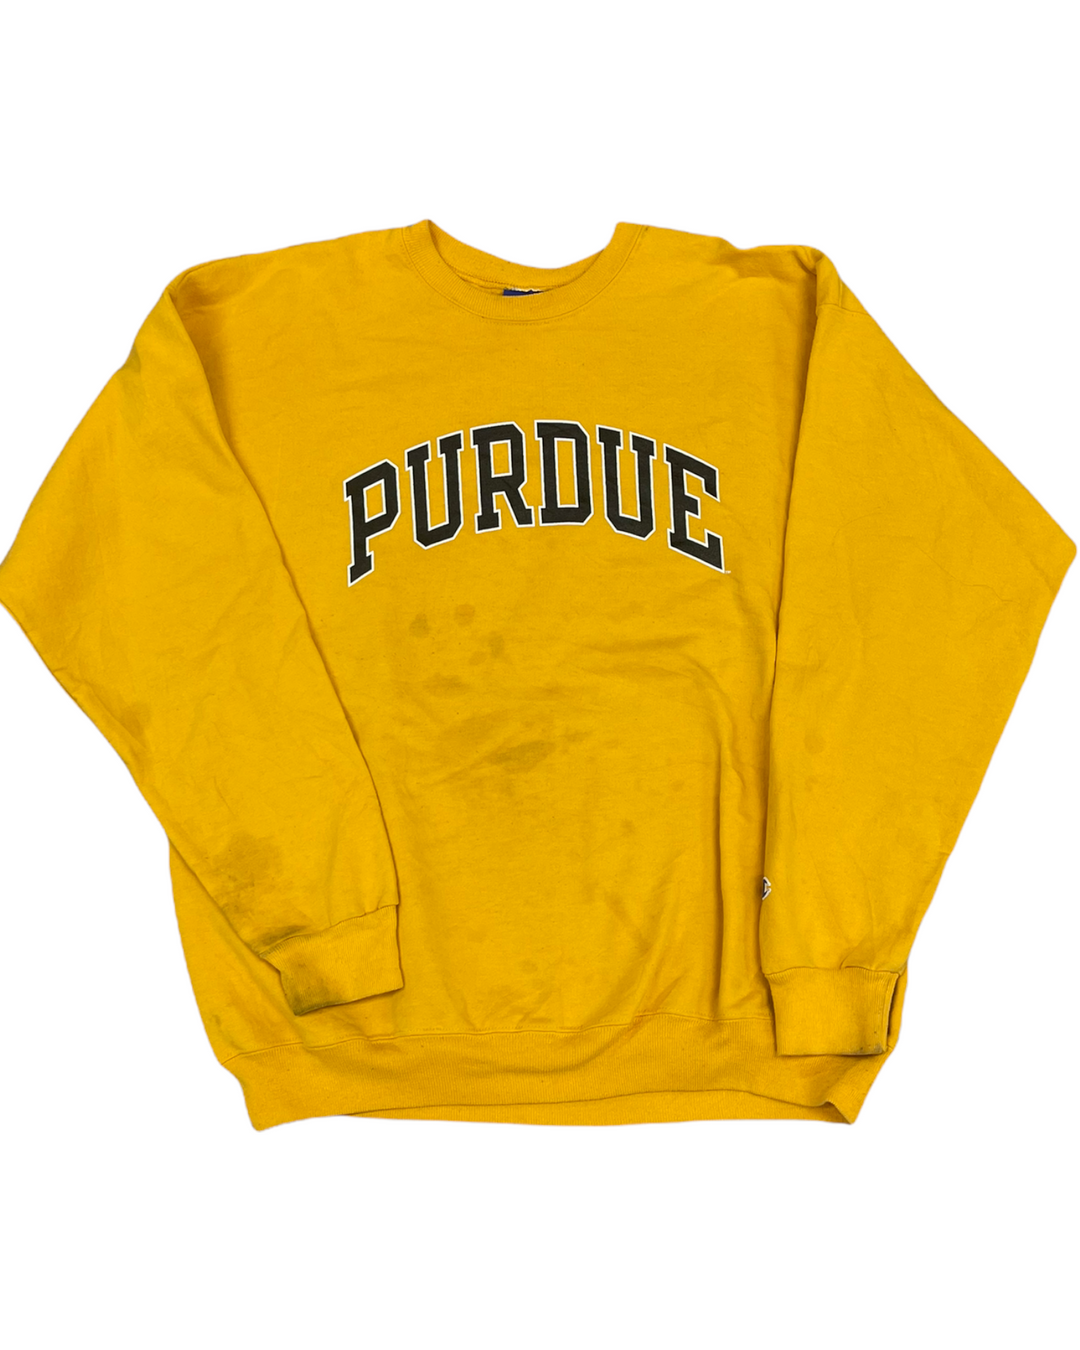 Purdue Vintage Sweatshirt